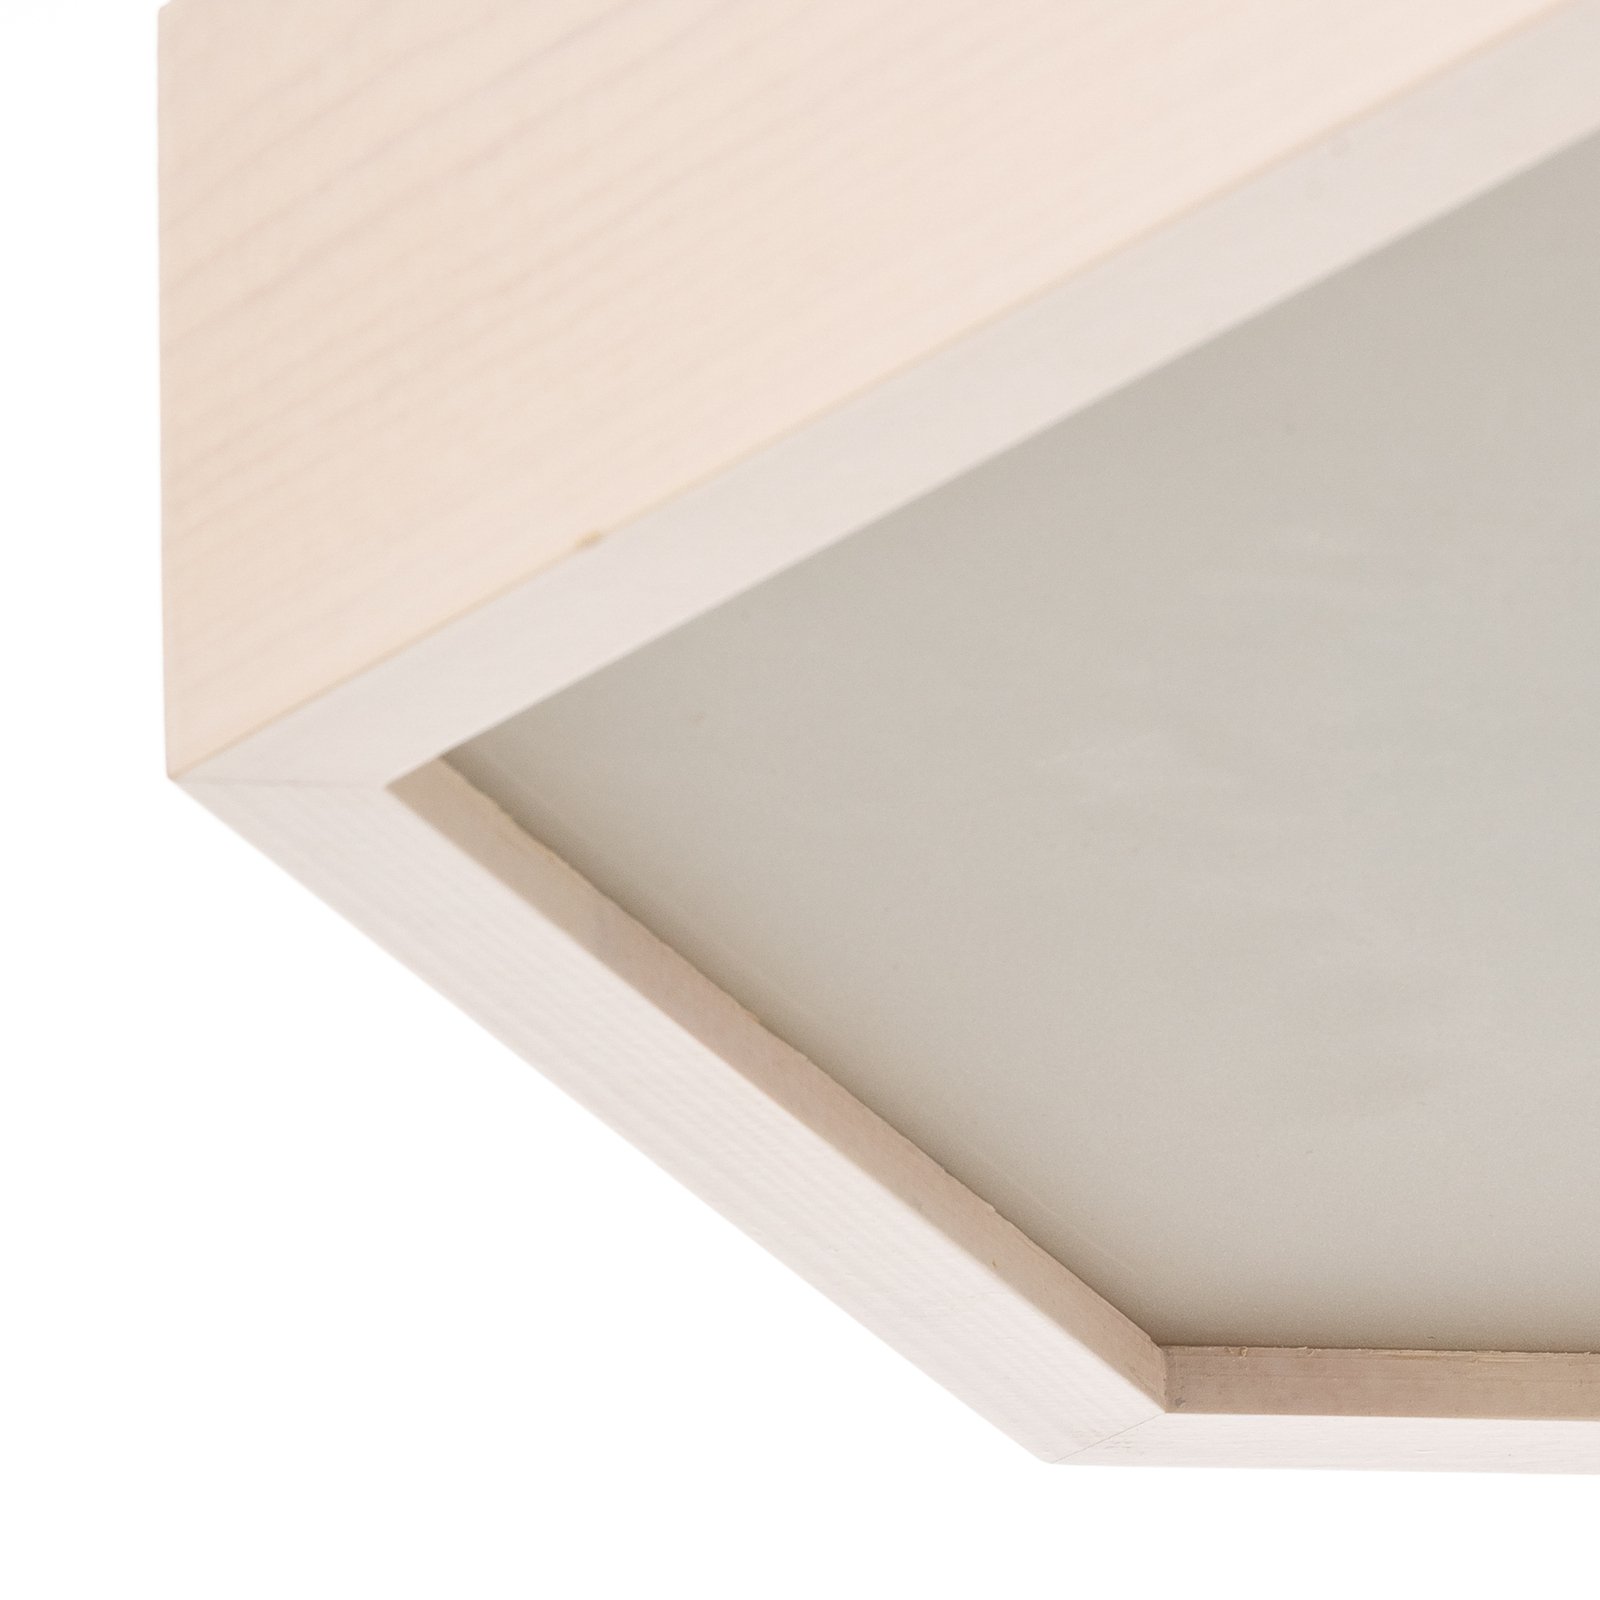 Envostar Hagen ceiling light, white pine